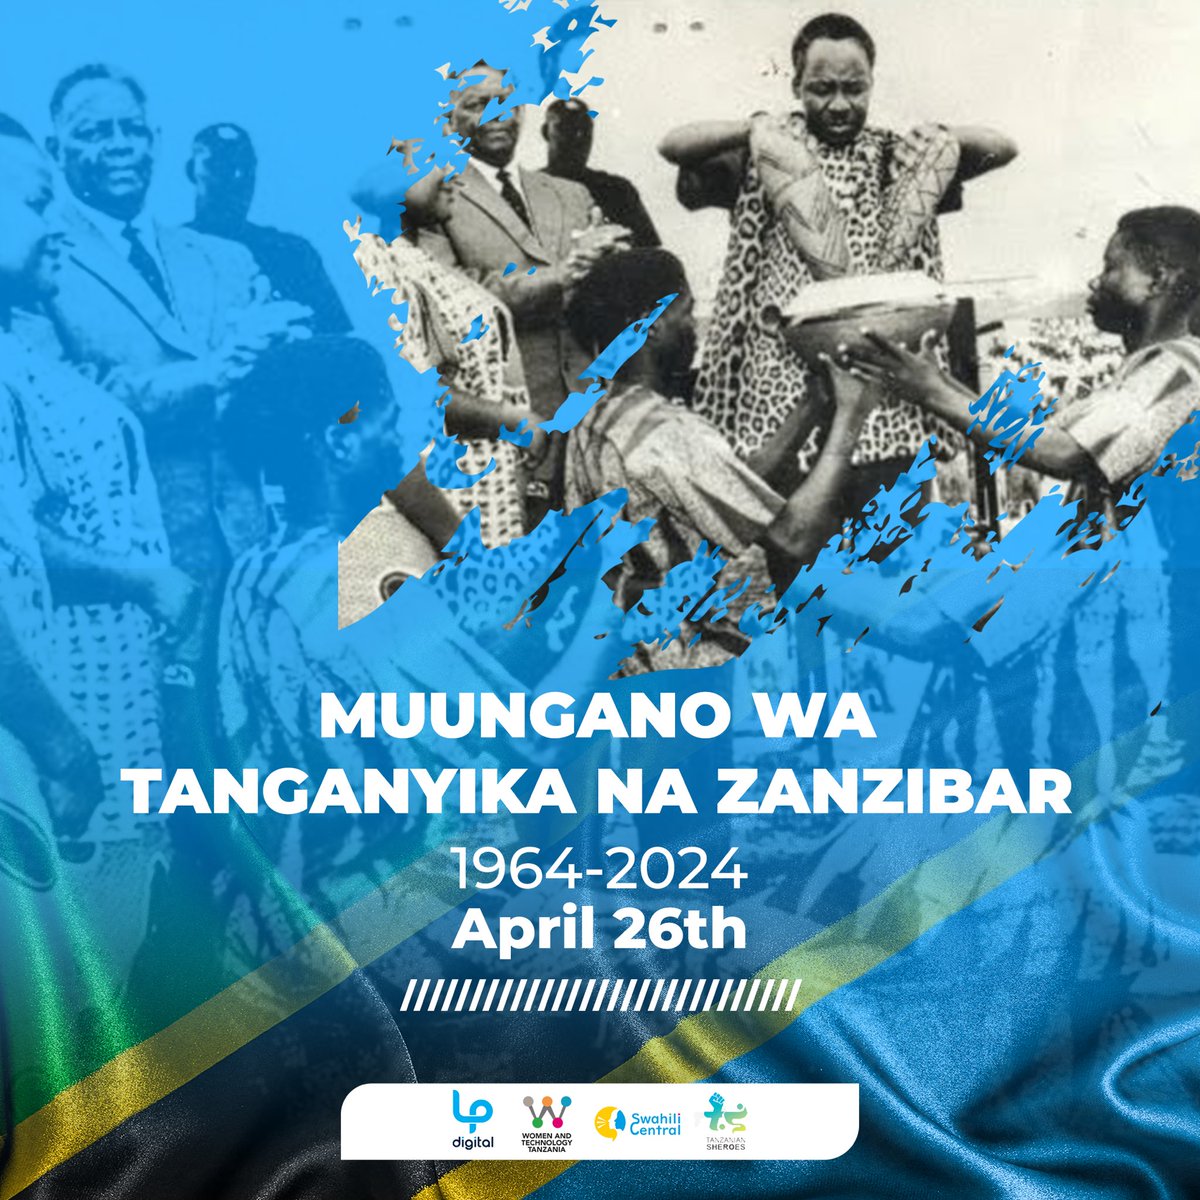 🎉 Leo tunaadhimisha miaka 60 ya Muungano wa Tanganyika na Zanzibar!🇹🇿

Tujivunie mshikamano na urithi wetu wa pamoja tunapoelekea kwenye mustakabali wenye neema zaidi. 

Hebu tuungane kusherehekea umoja wetu. 🤝
#MitandaoNaSisi #HakiZaKidijitali #MapinduziDay